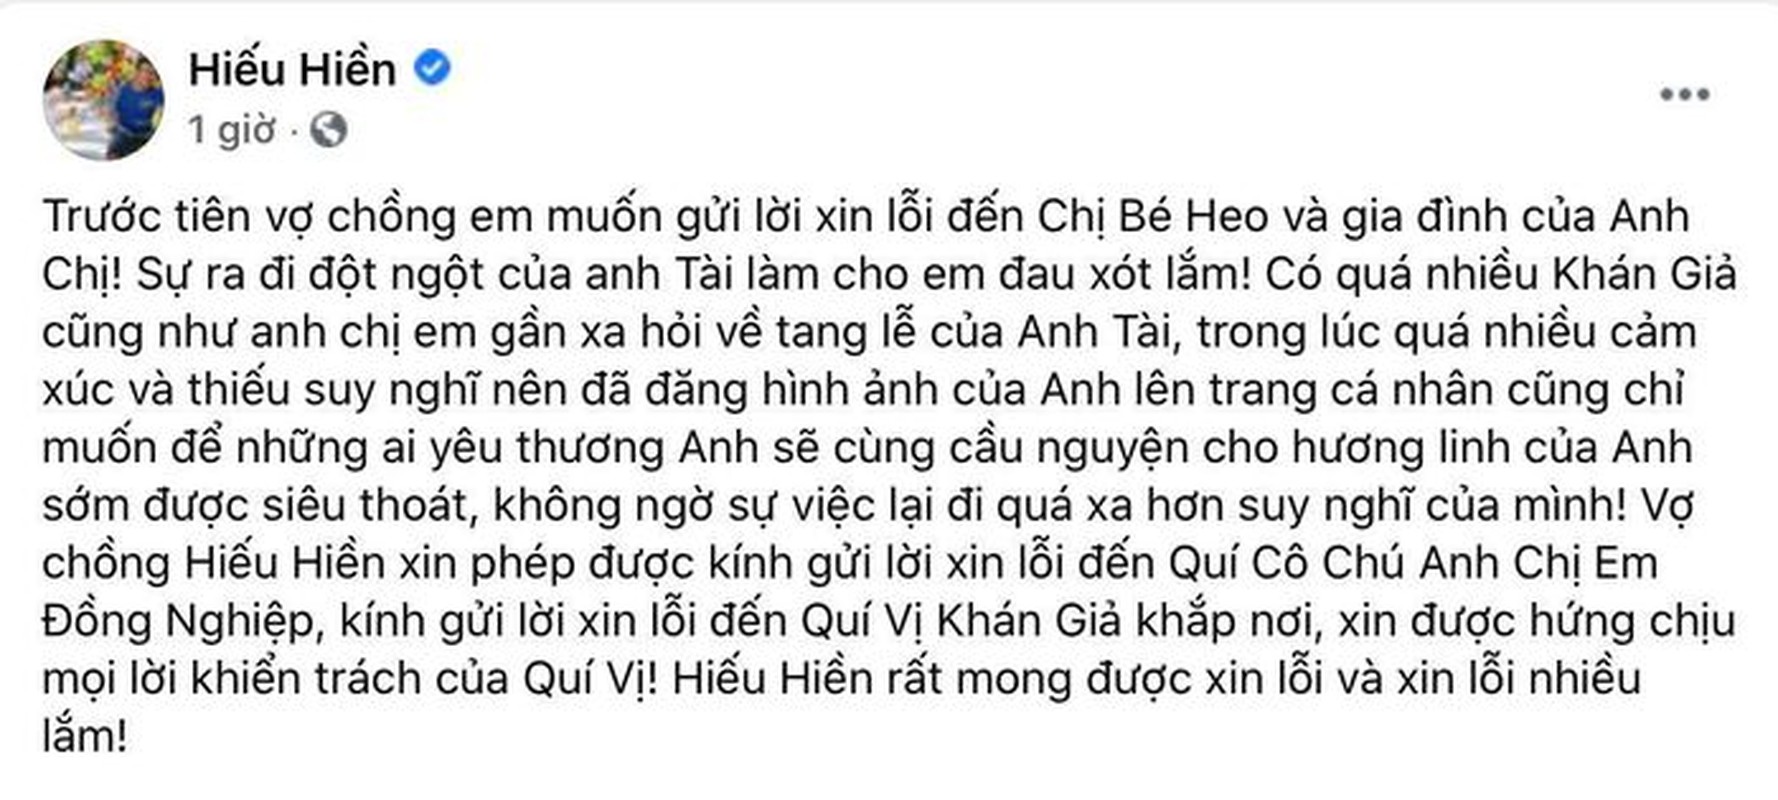 Hieu Hien cau view phan cam the nao truoc vu livestream NS Chi Tai?-Hinh-4